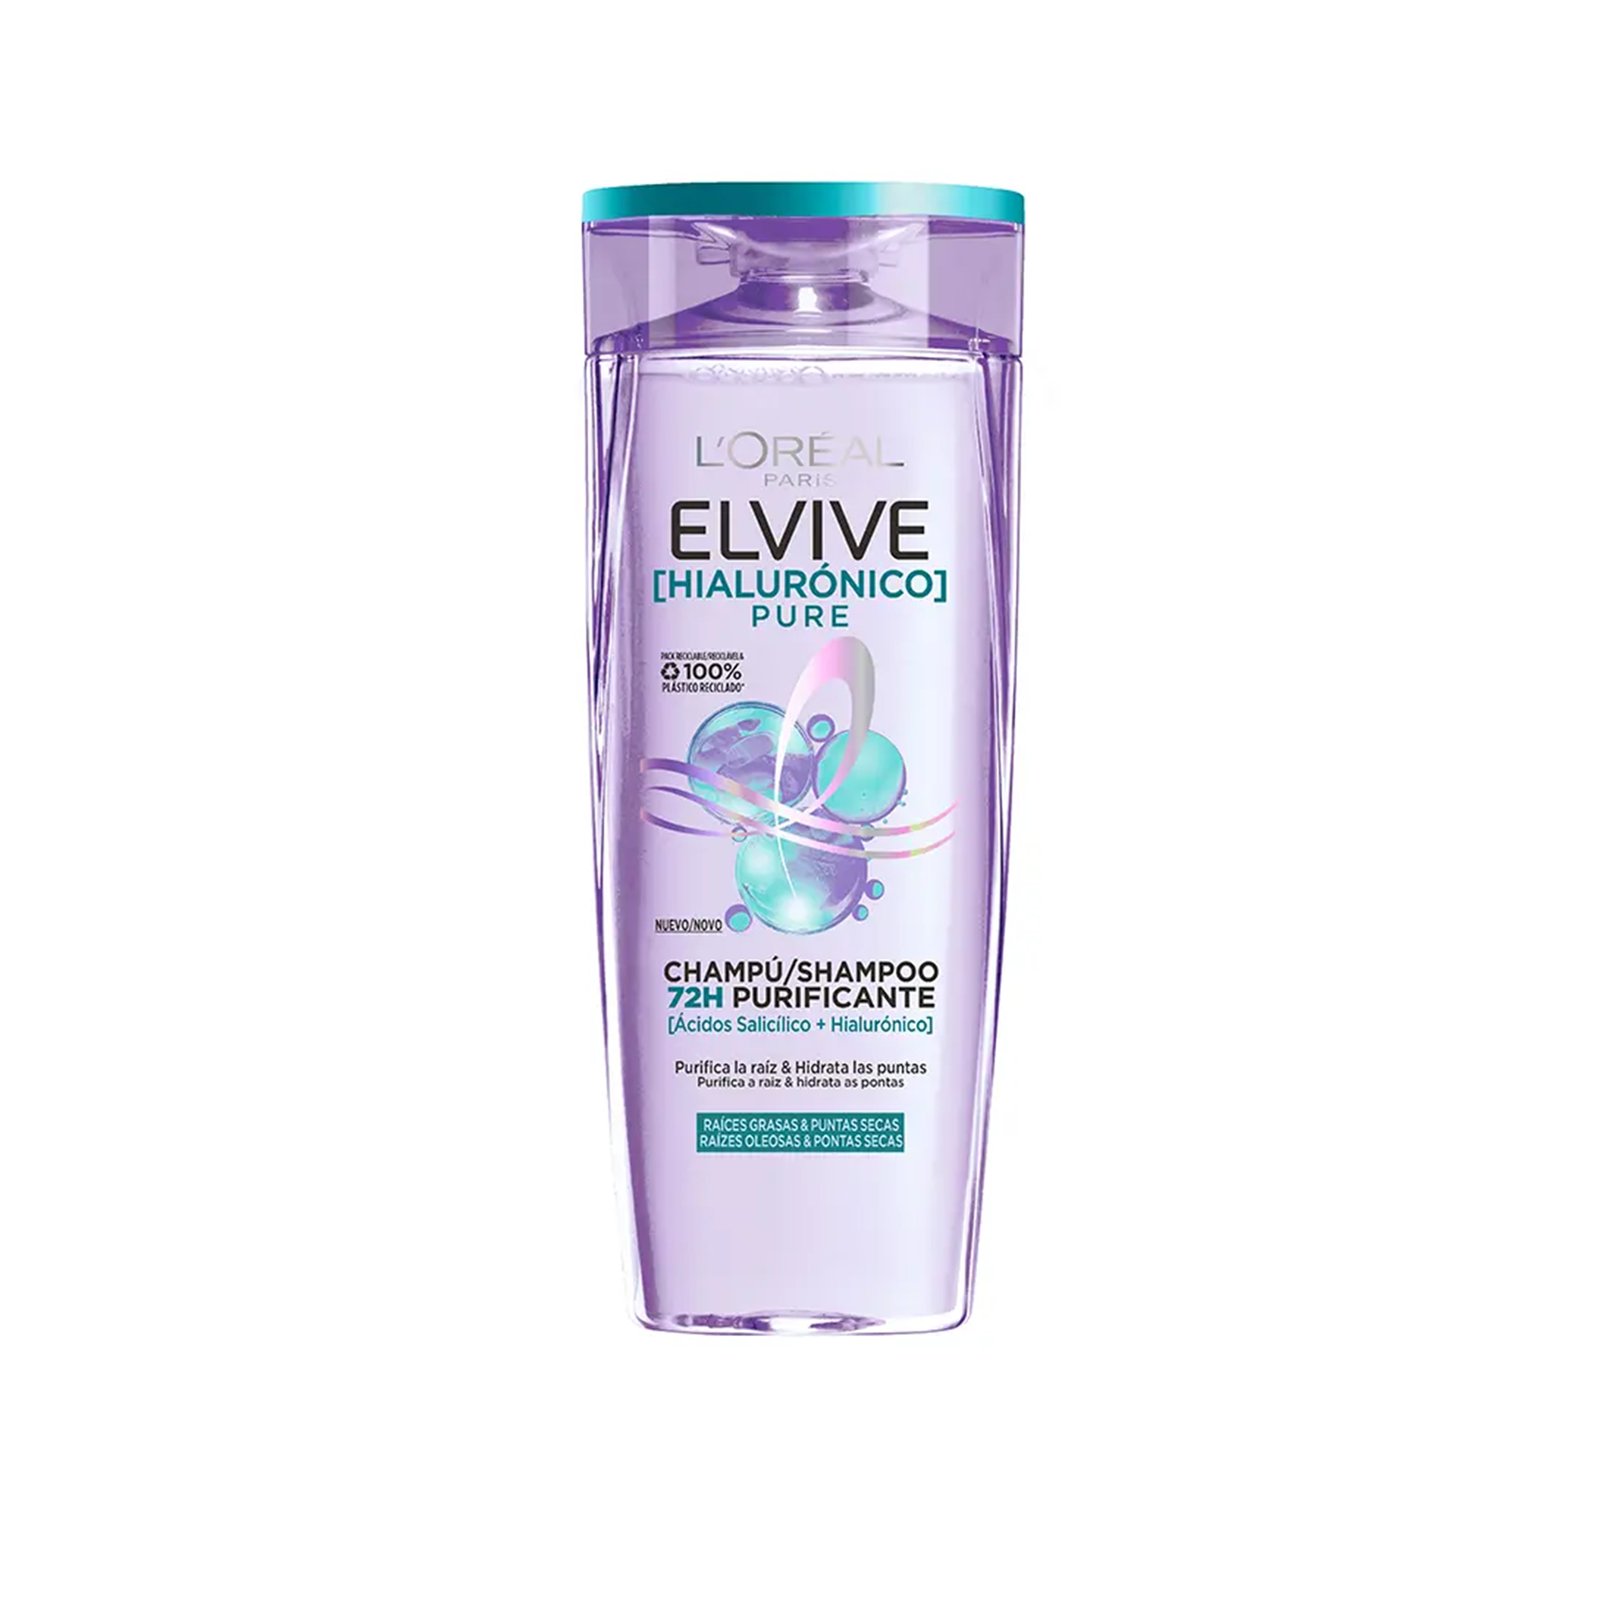 L'Oréal Paris Elvive Hyaluronic Pure 72H Purifying Shampoo 400ml (13.52 fl oz)